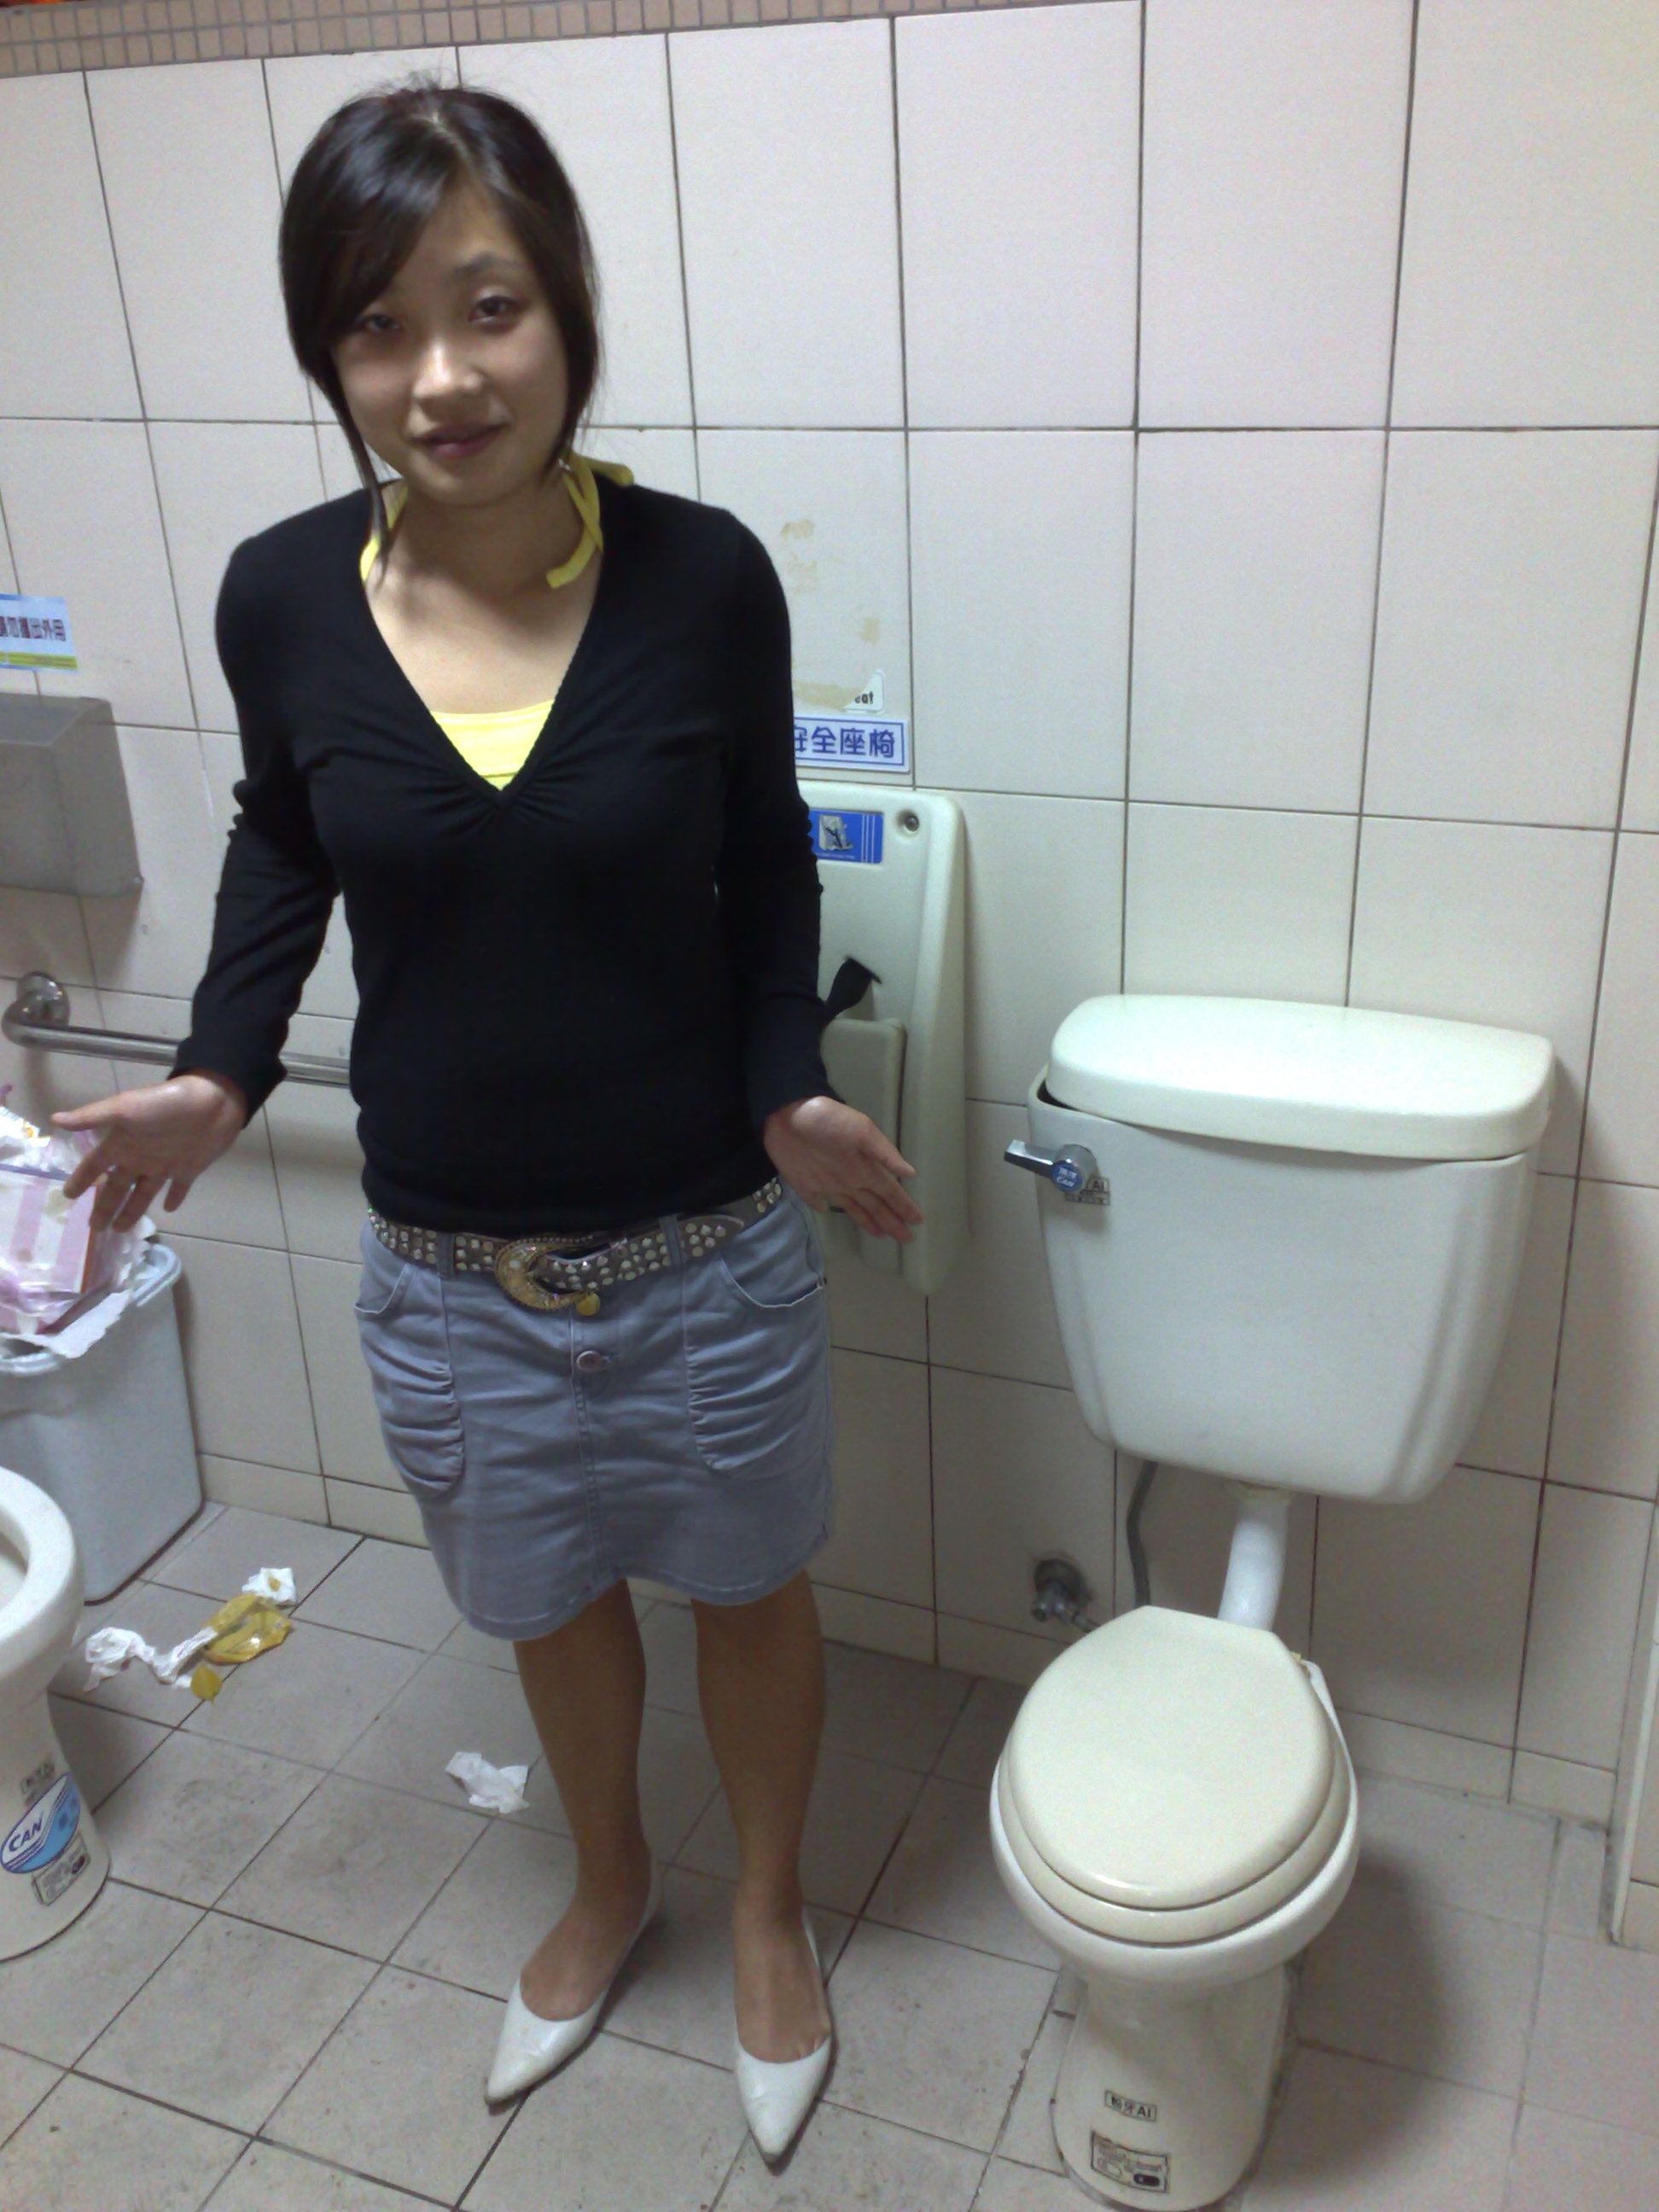 Туалет азиатского типа